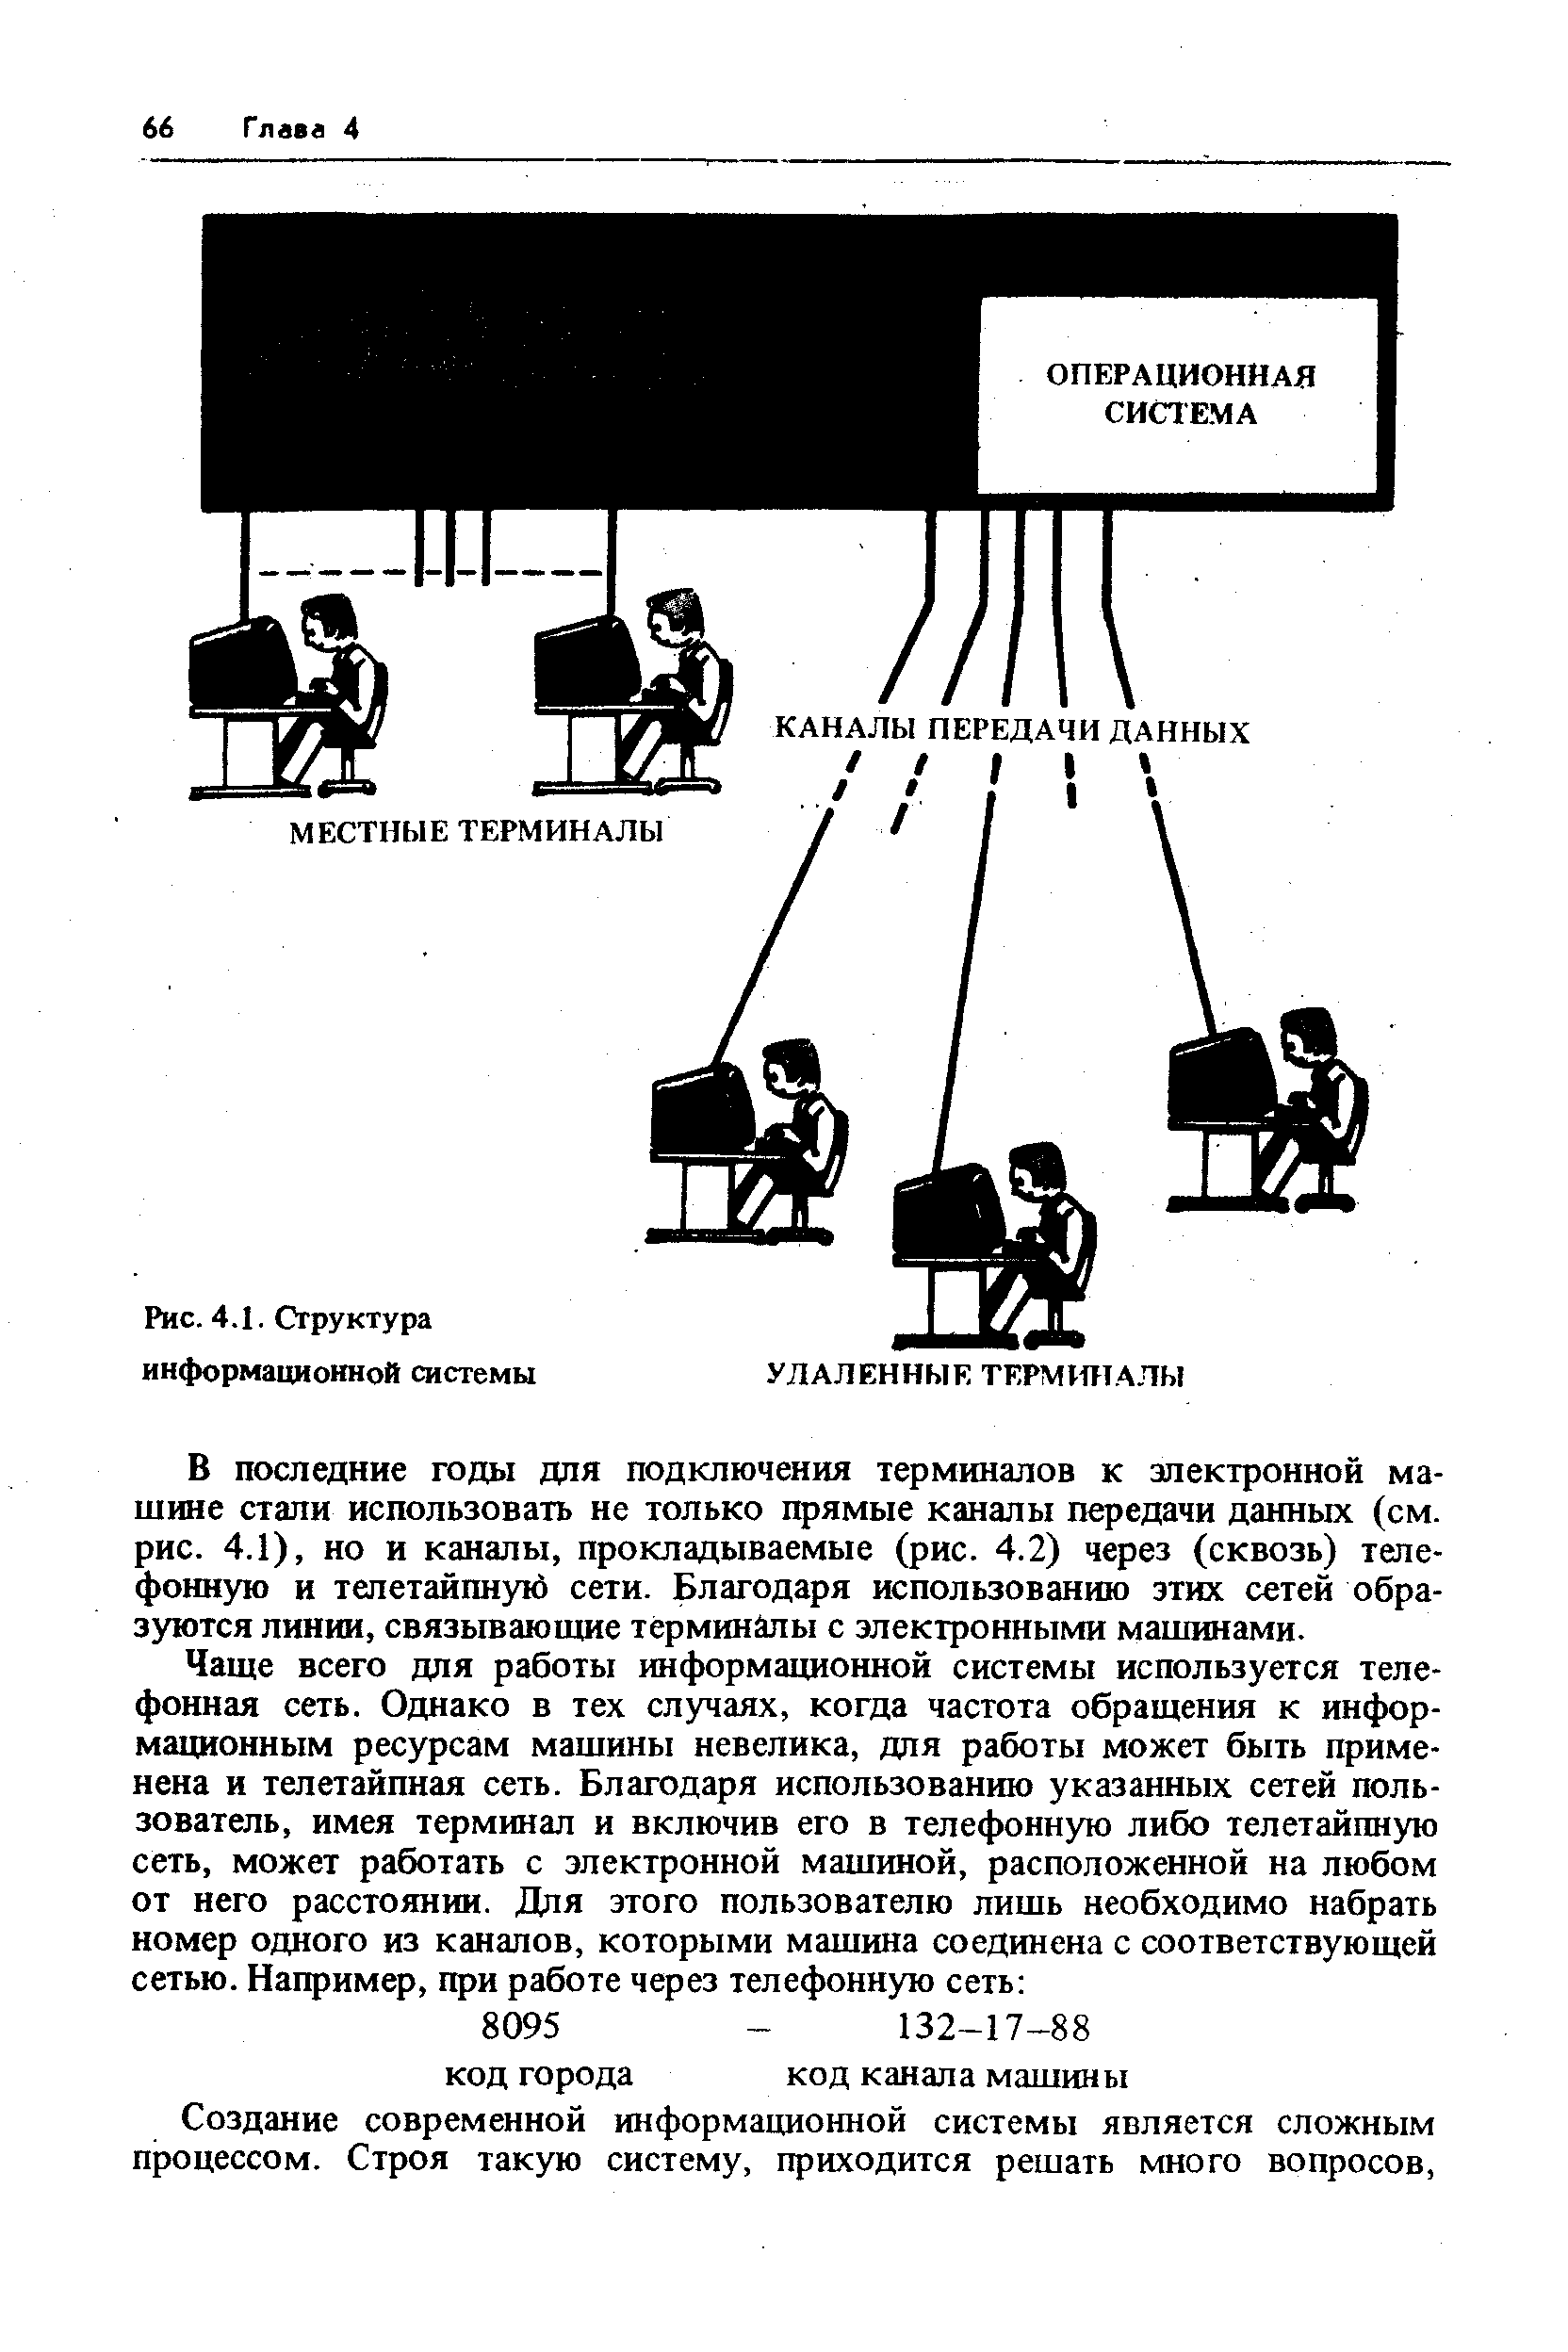 Рис. 4.1. Структура информационной системы
